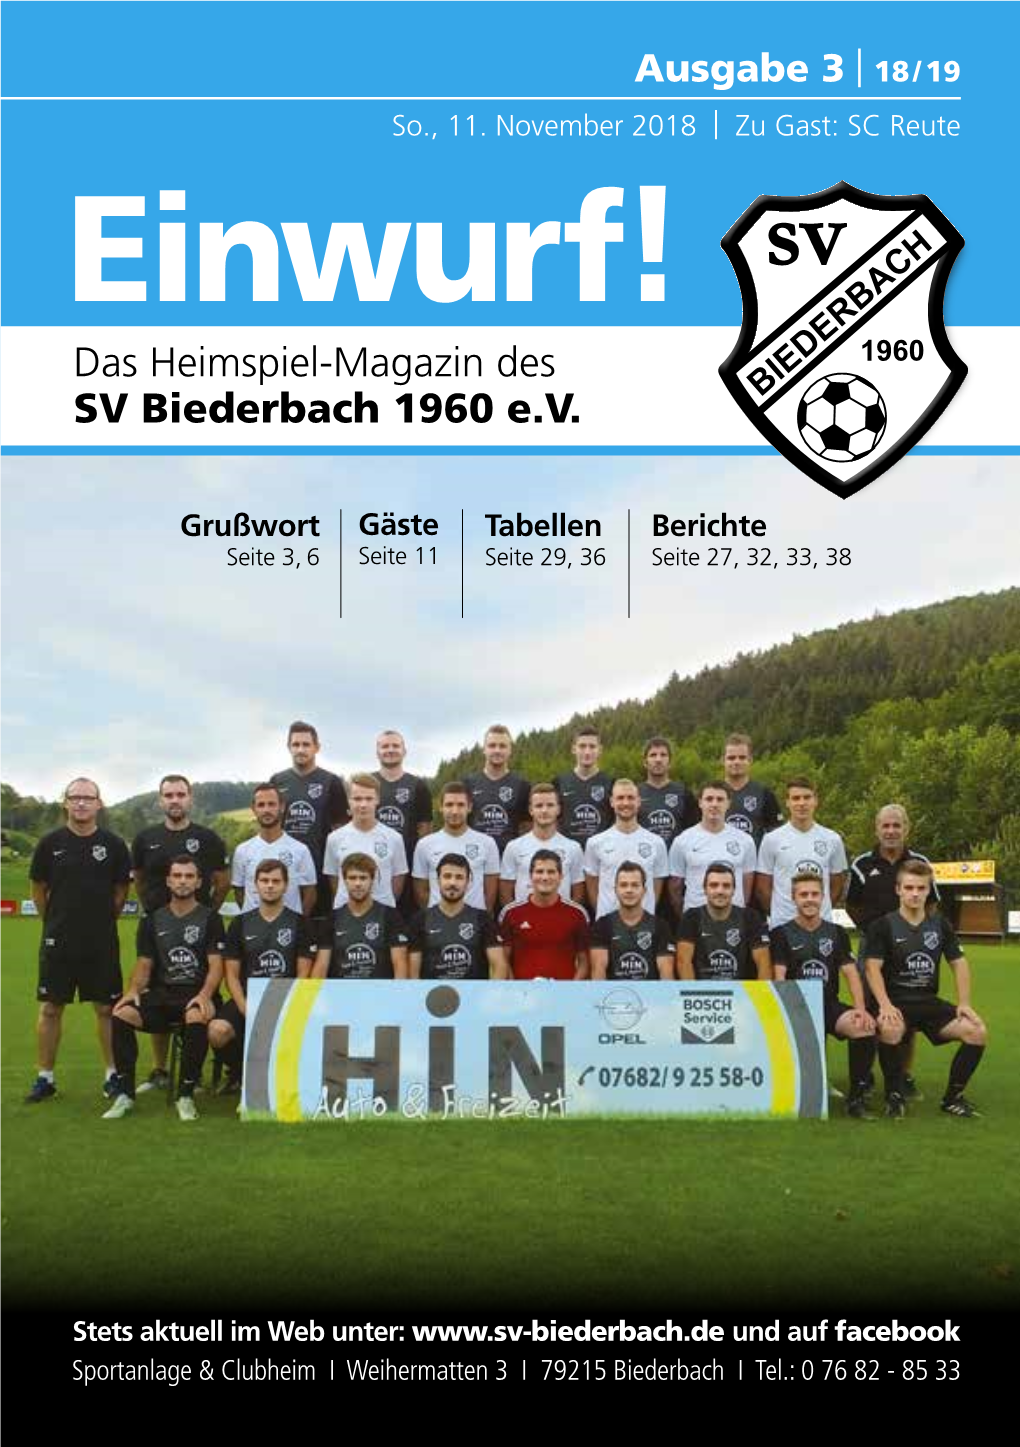 SC Reute Einwurf! Das Heimspiel-Magazin Des SV Biederbach 1960 E.V